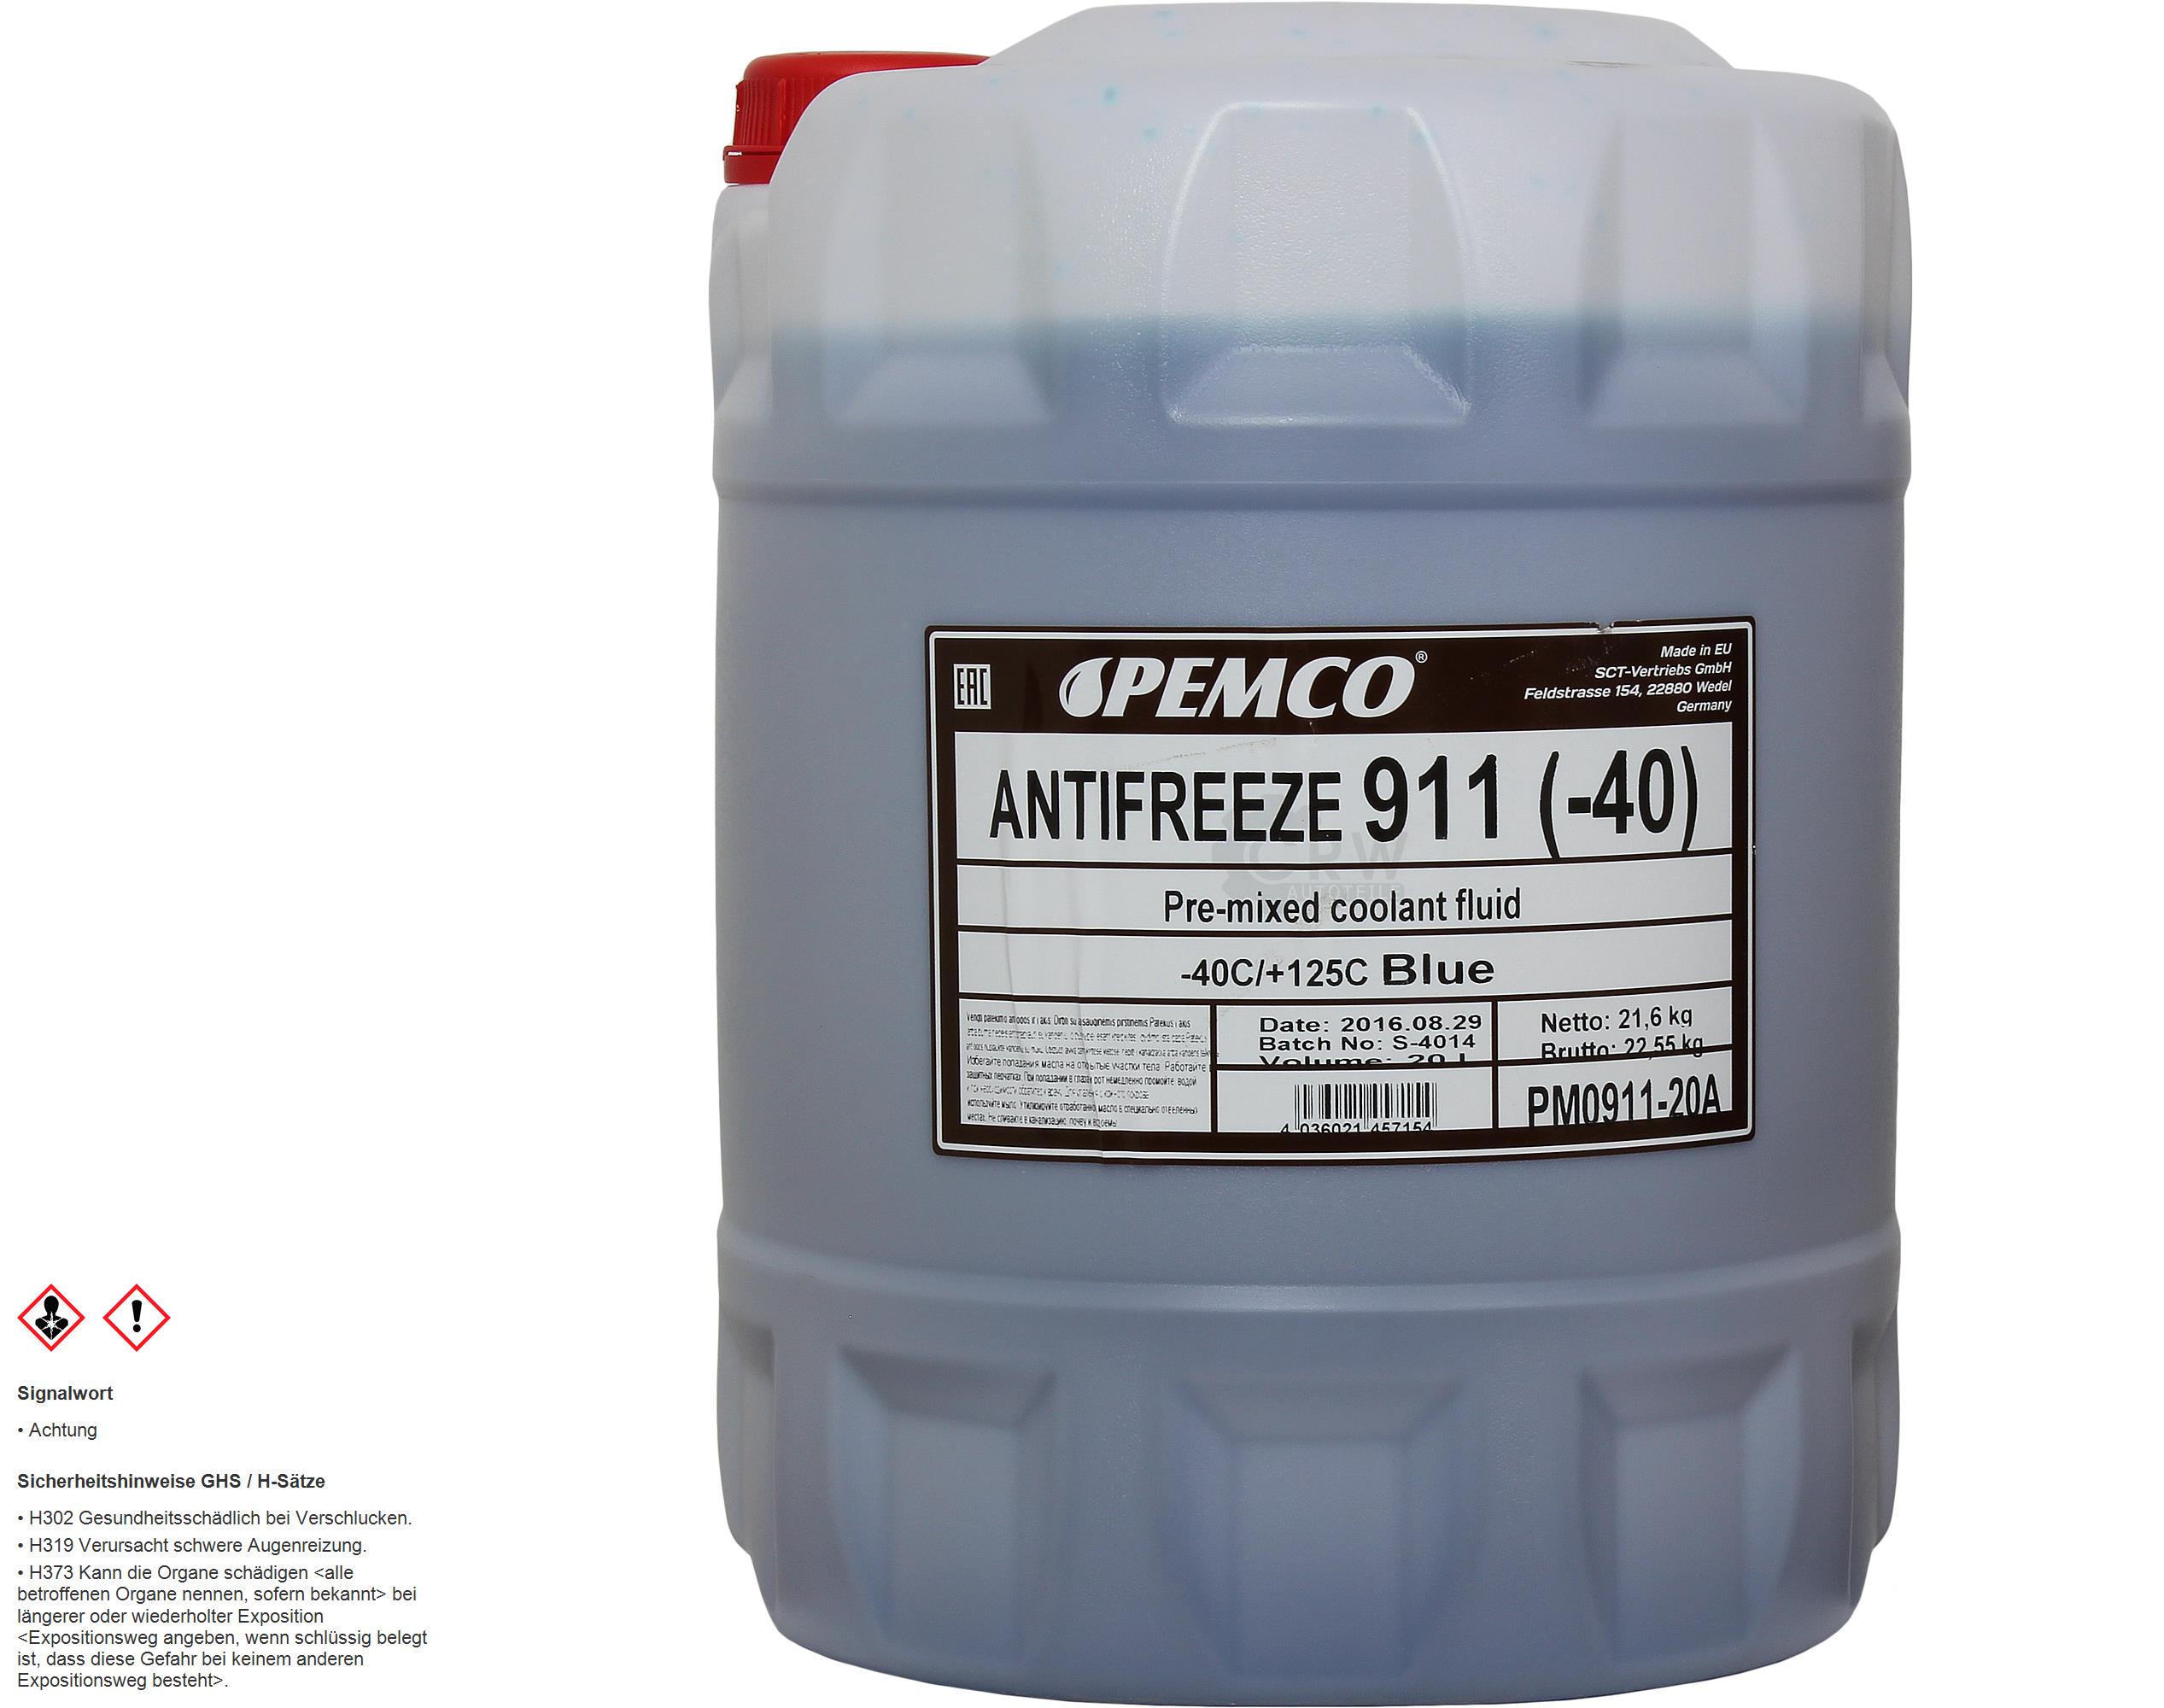 20 Liter PEMCO Antifreeze 911 Kühlerfrostschutz blau Fertiggemisch Typ G11